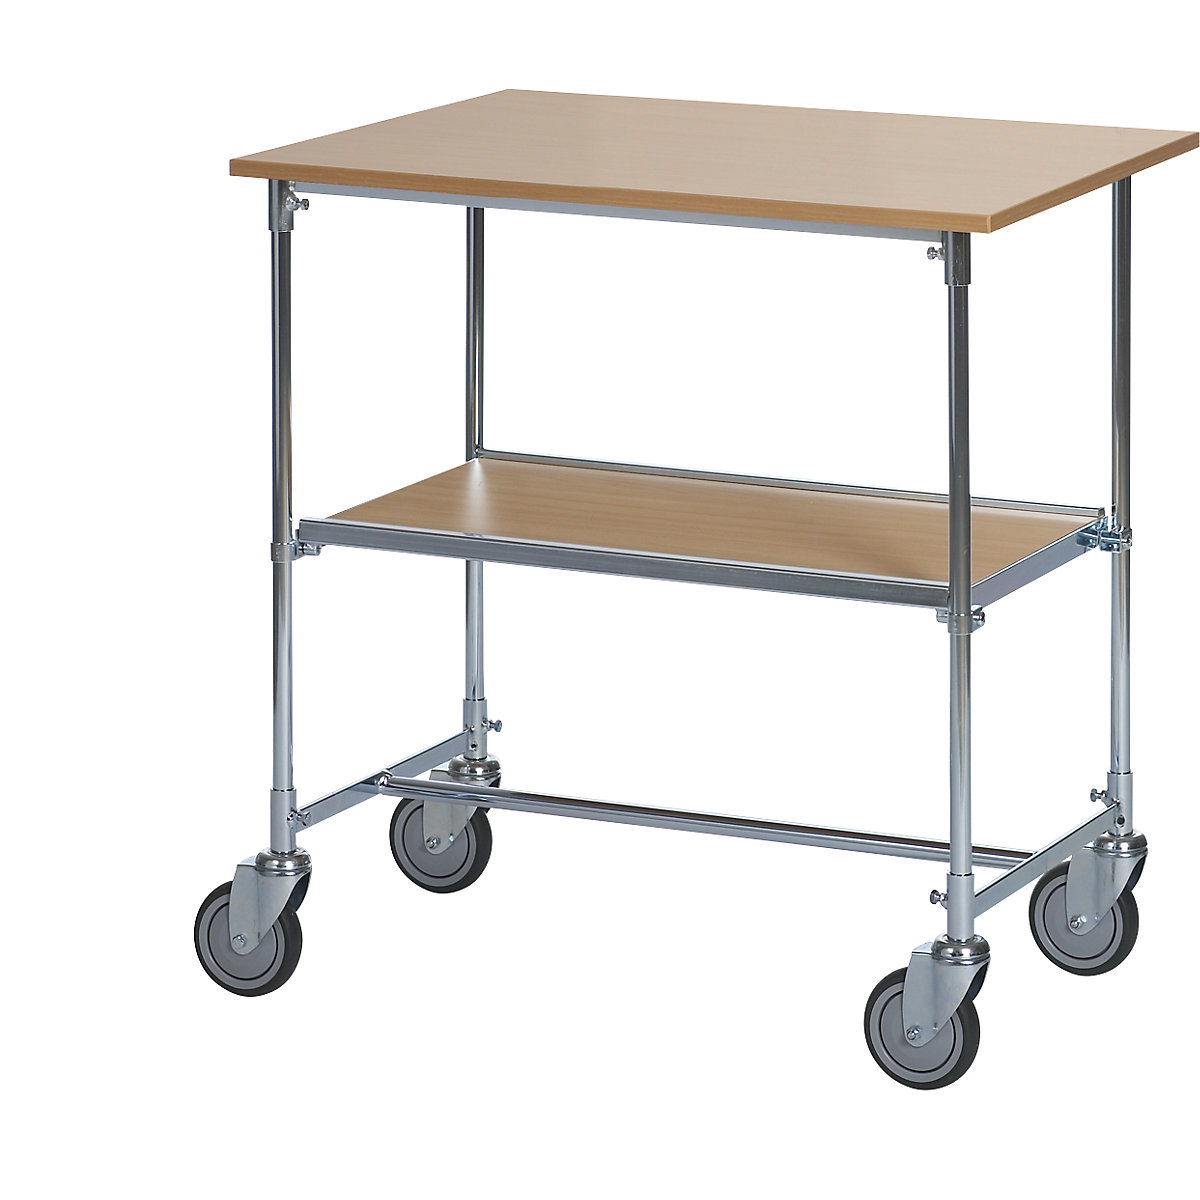 Pozinkovaný stolový vozík – HelgeNyberg, d x š x v 820 x 600 x 900 mm, bukový dekor-1